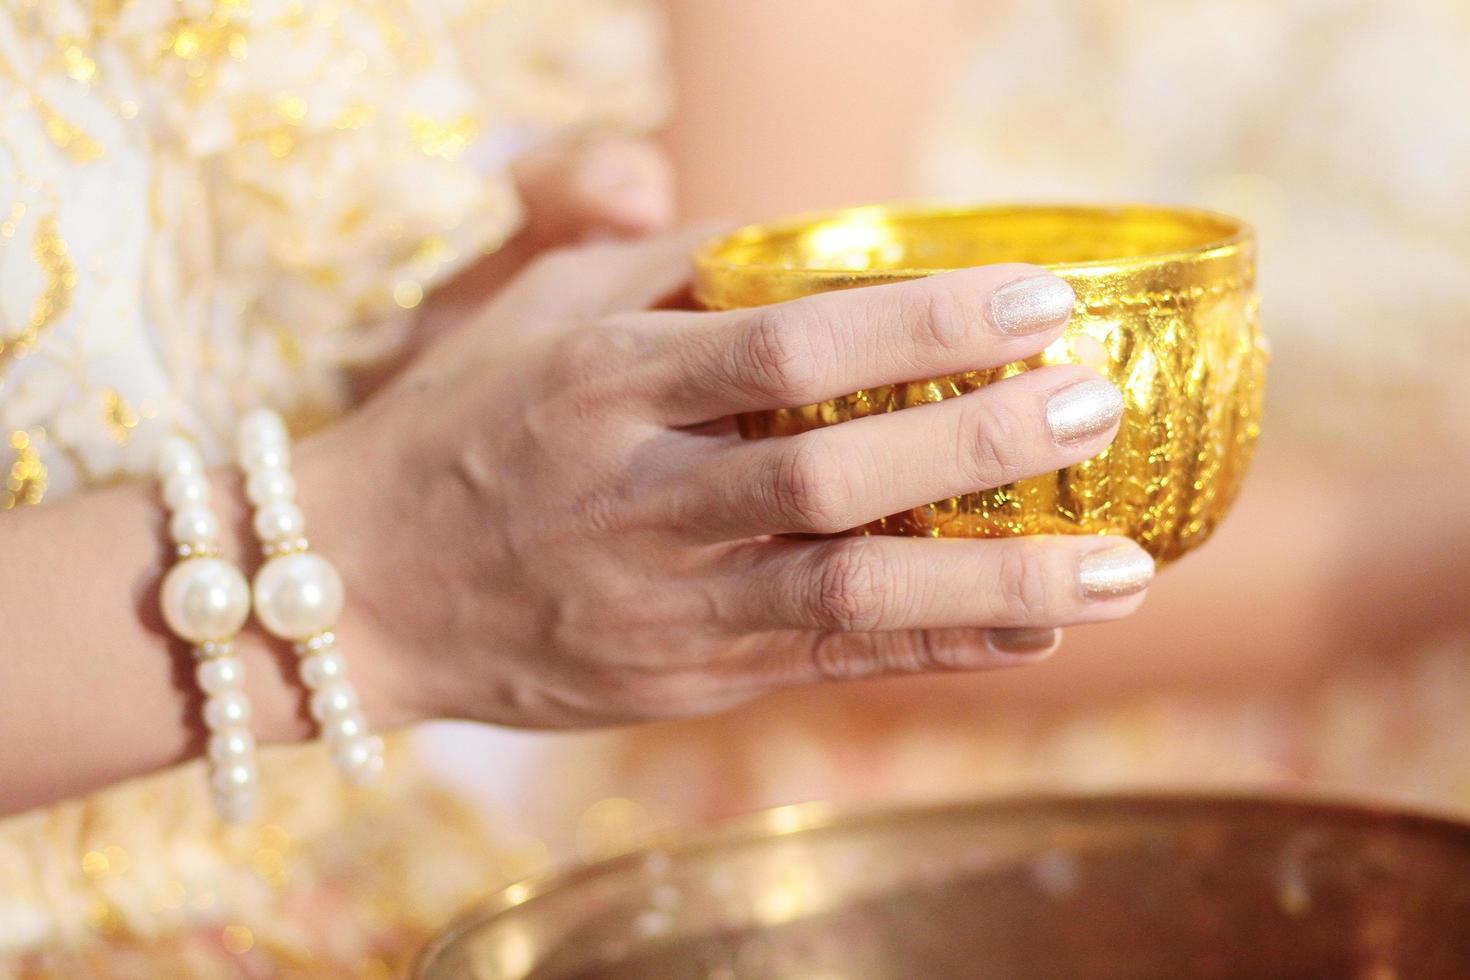 donna mano hoding oro tazza per versare acqua nel conchiglia conchiglia su glod vassoio nel tradizione tailandese nozze cerimonia foto